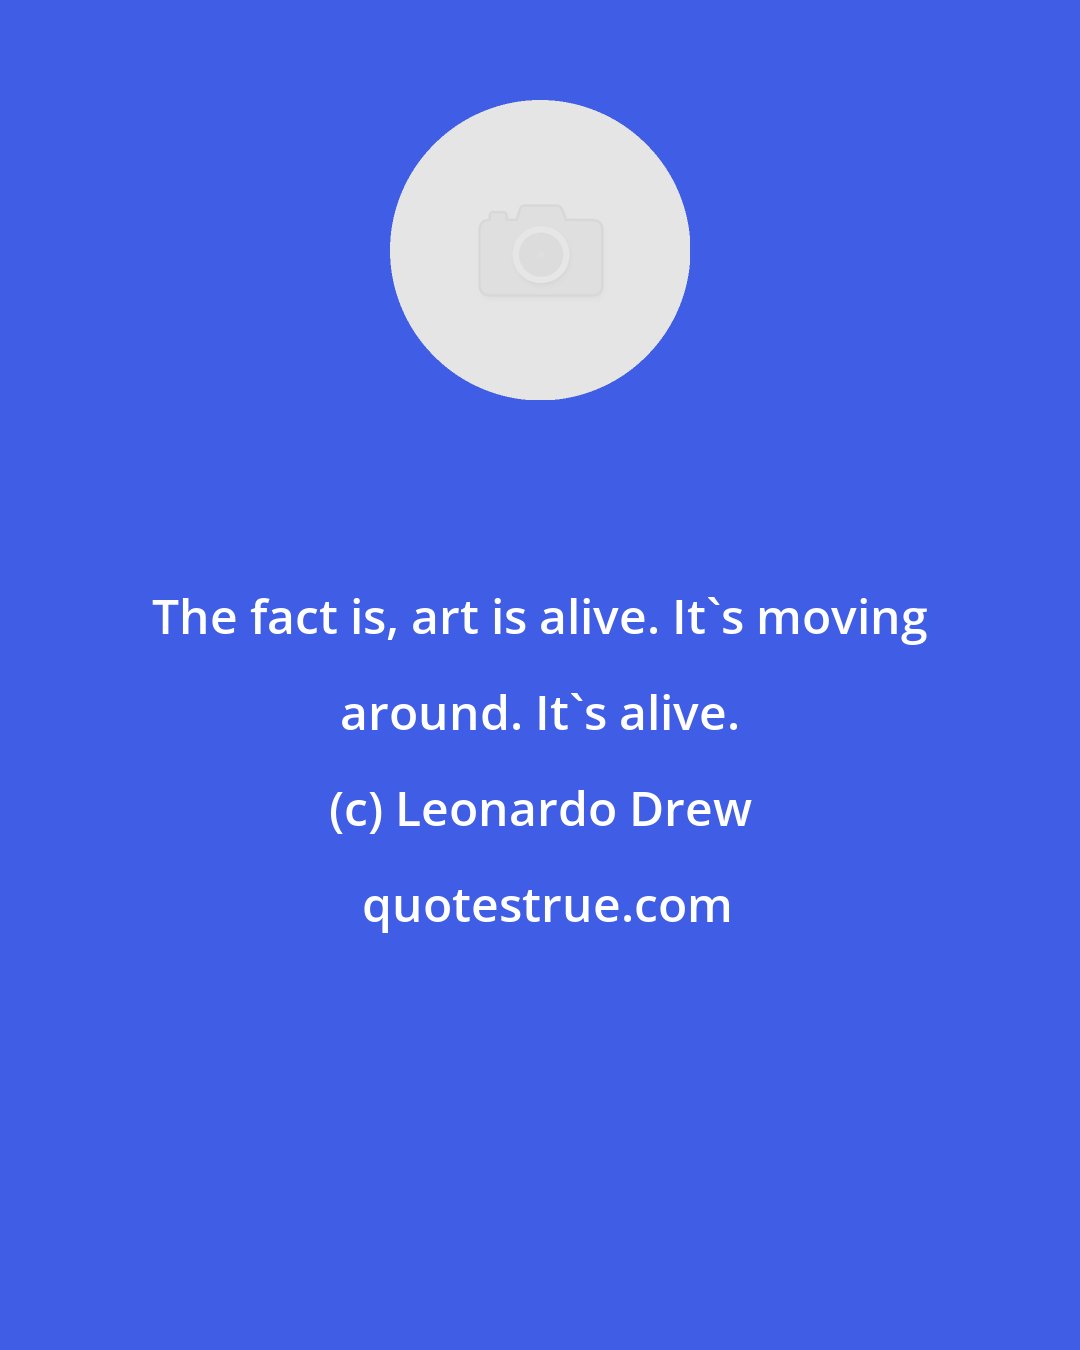 Leonardo Drew: The fact is, art is alive. It's moving around. It's alive.